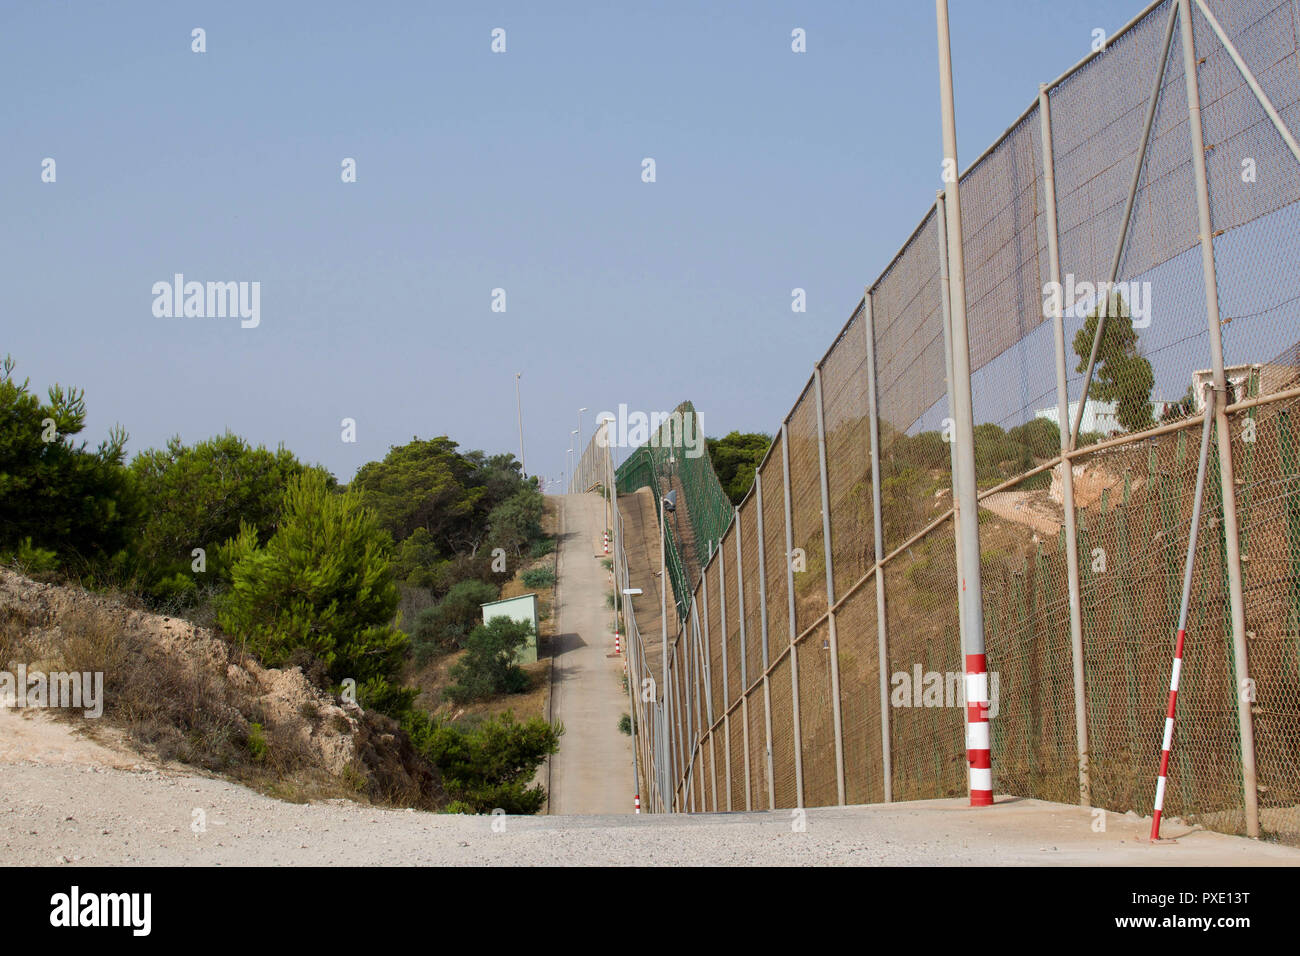 Melilla, Melilla, España. 13 Aug, 2018. Una valla fronteriza fuertemente  fortificada funciona durante aproximadamente 11 km entre Melilla, España y  Marruecos.El enclave español ciudad de Melilla se sitúa en la costa del